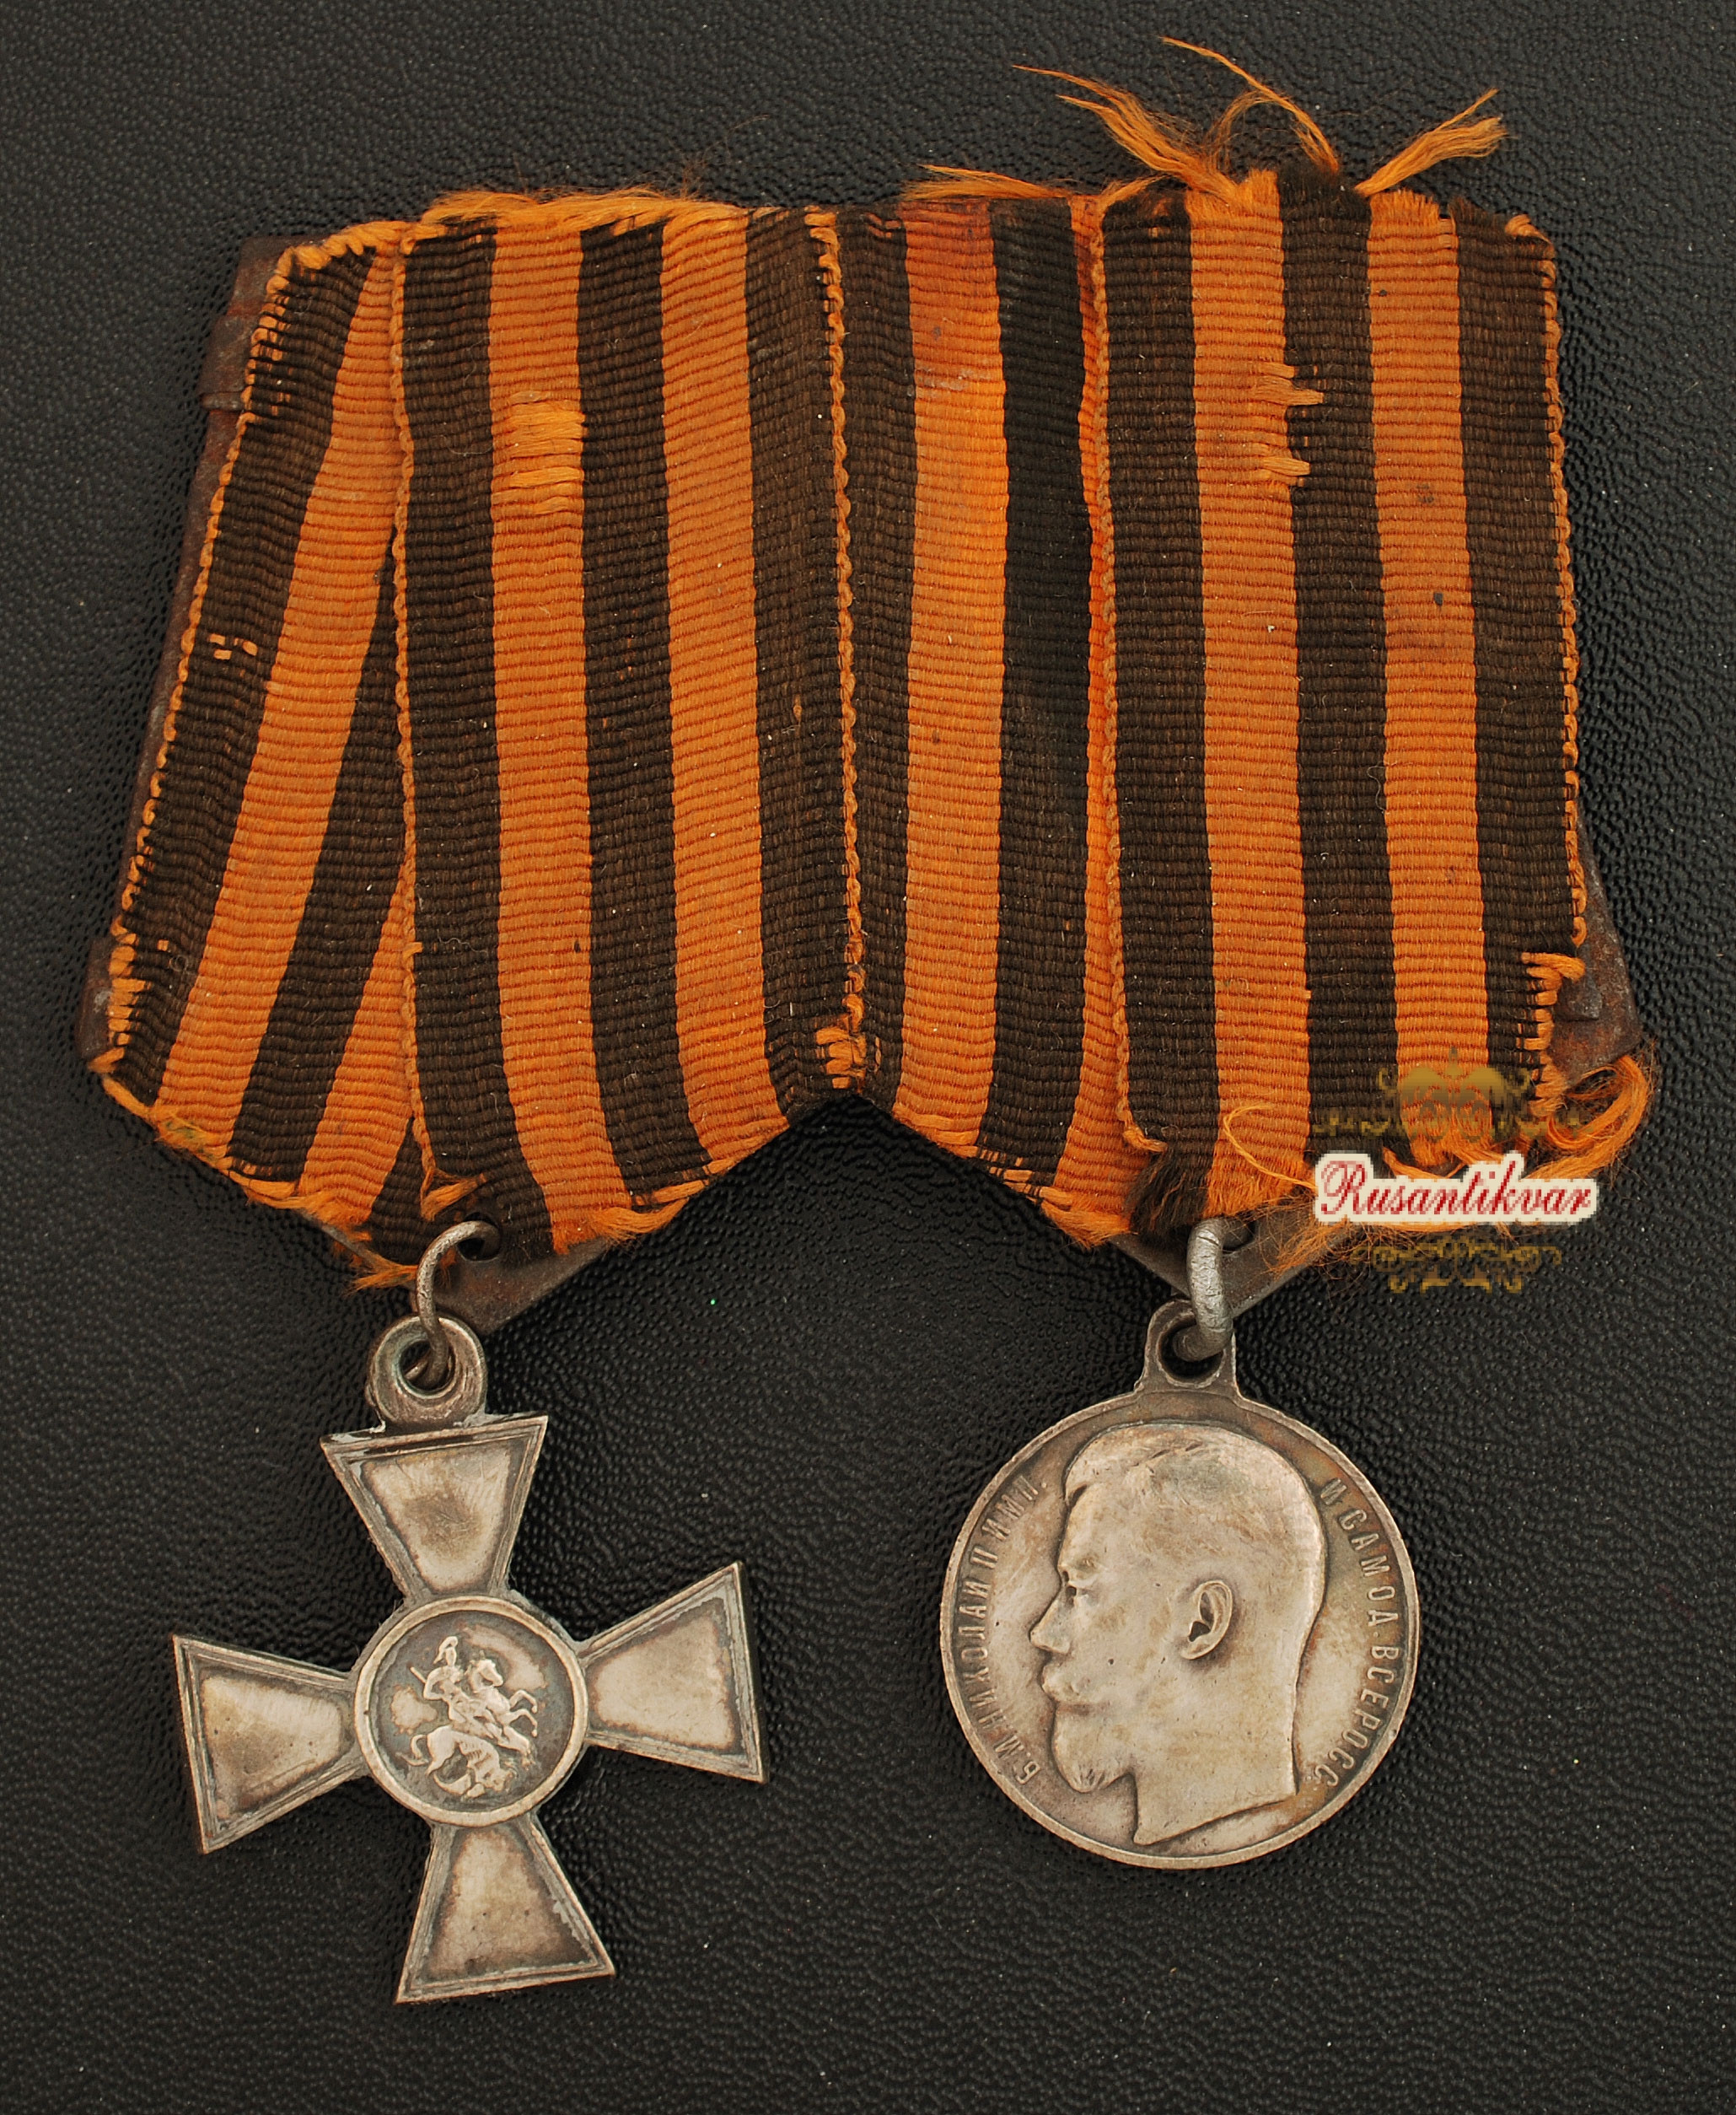 Колодка Георгиевская медаль 4 степени №349.753 и Георгиевский крест 4 степени №341.408